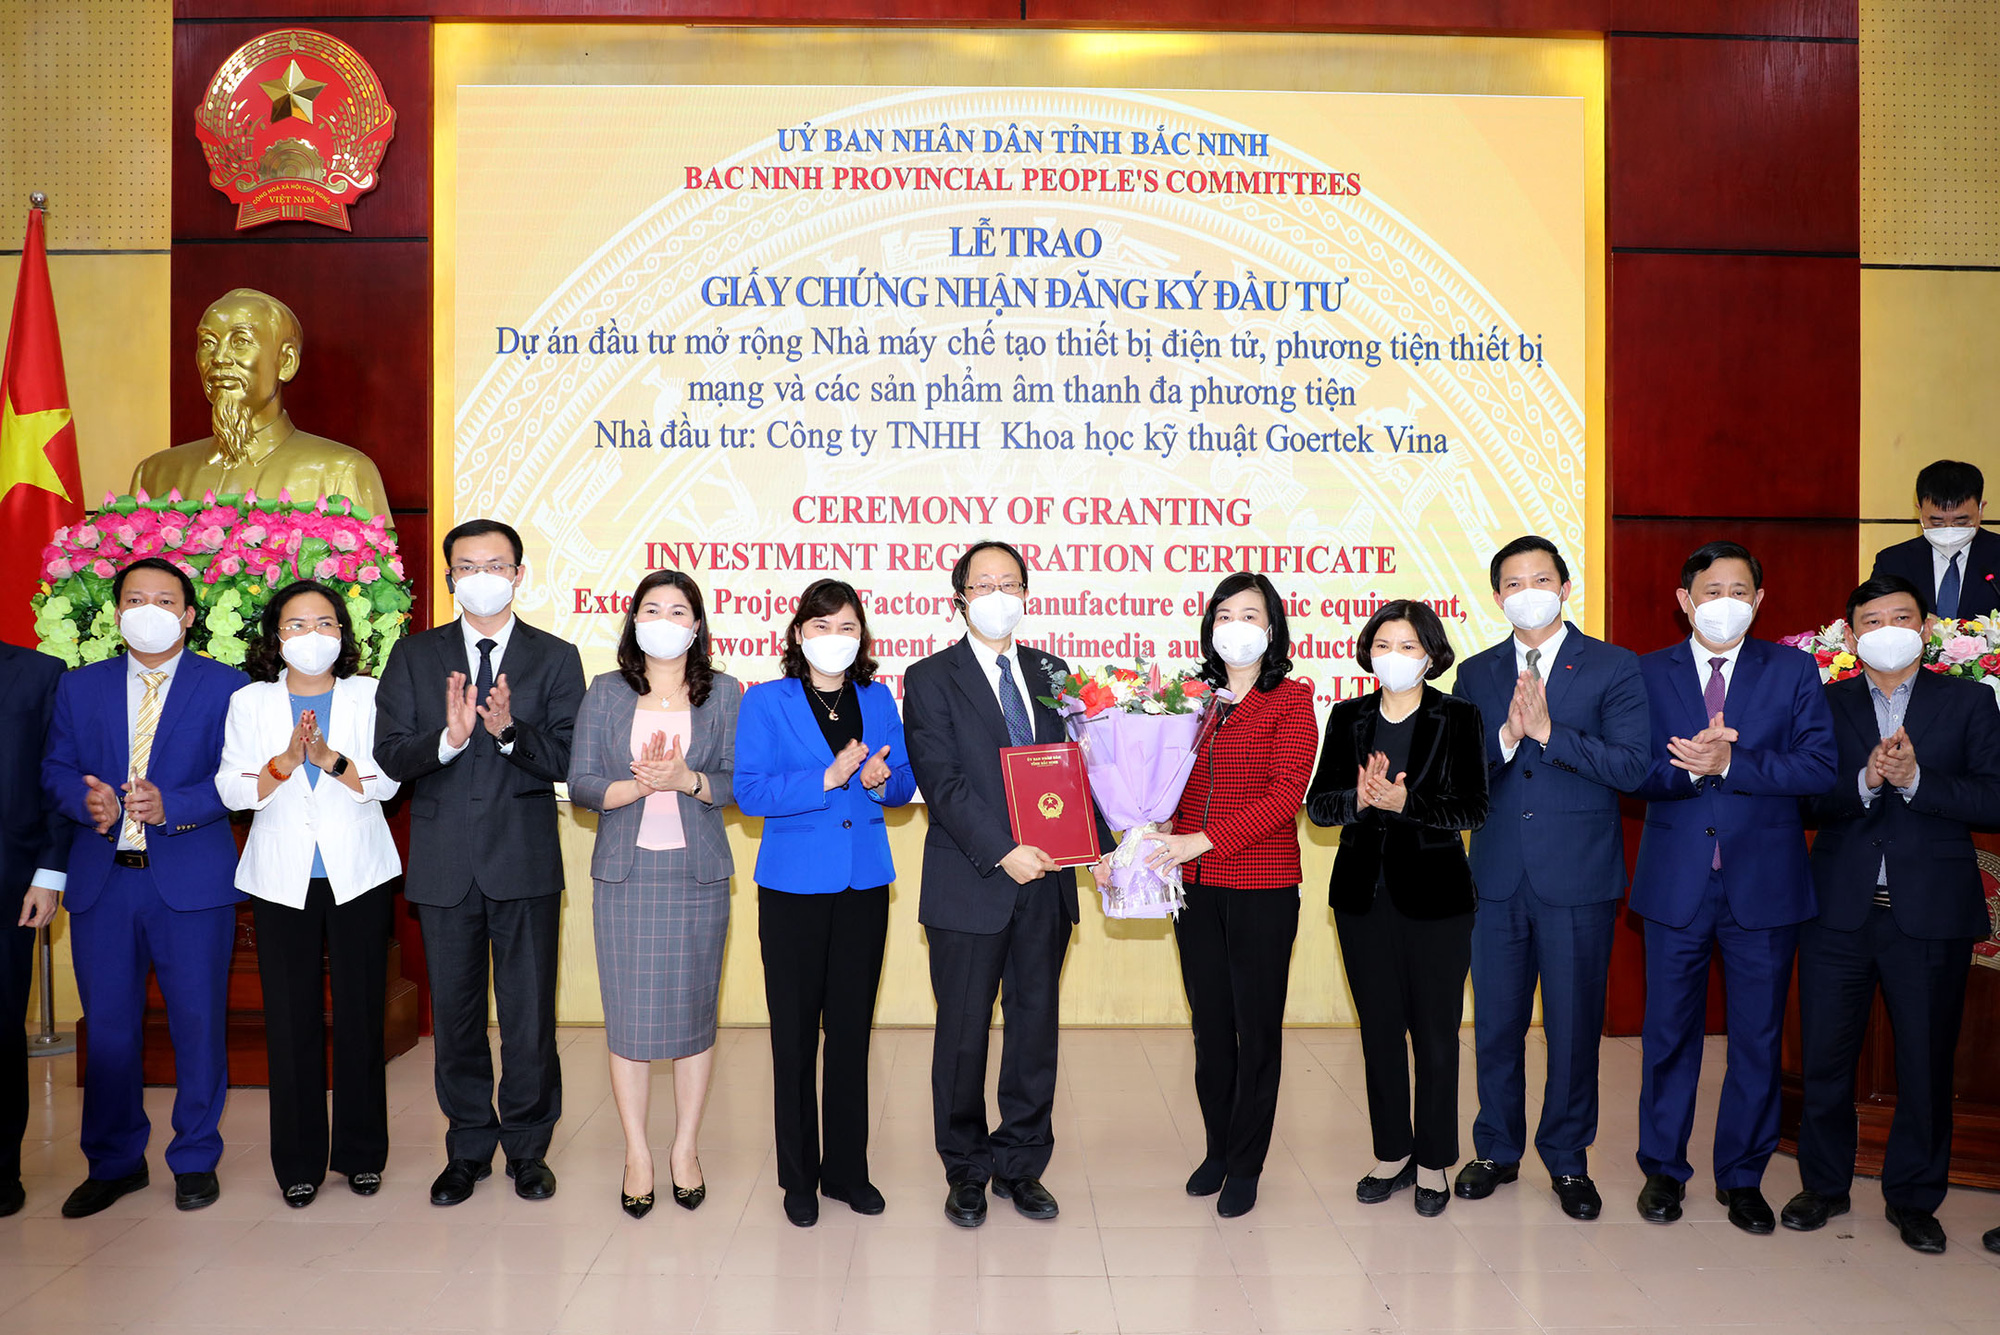 Dẫn đầu cả nước về thu hút vốn FDI, Bắc Ninh trao giấy chứng nhận đầu tư cho Công ty Goertek Vina - Ảnh 2.